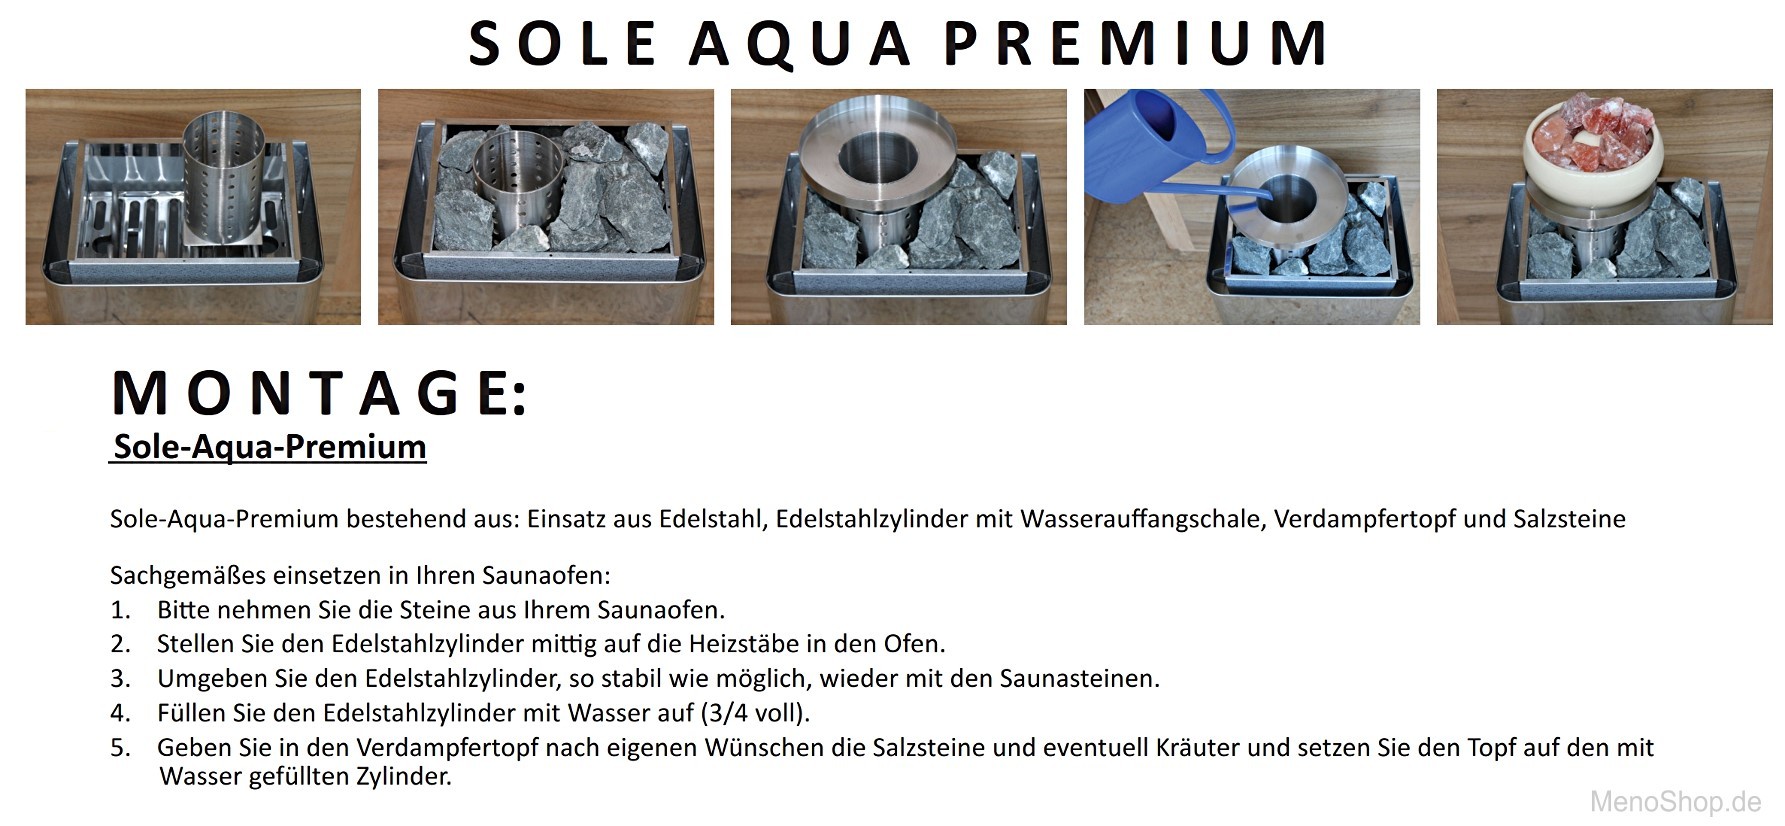 Sole-Aqua-Premium-Salzverdanpfer-TPI-Infraworld